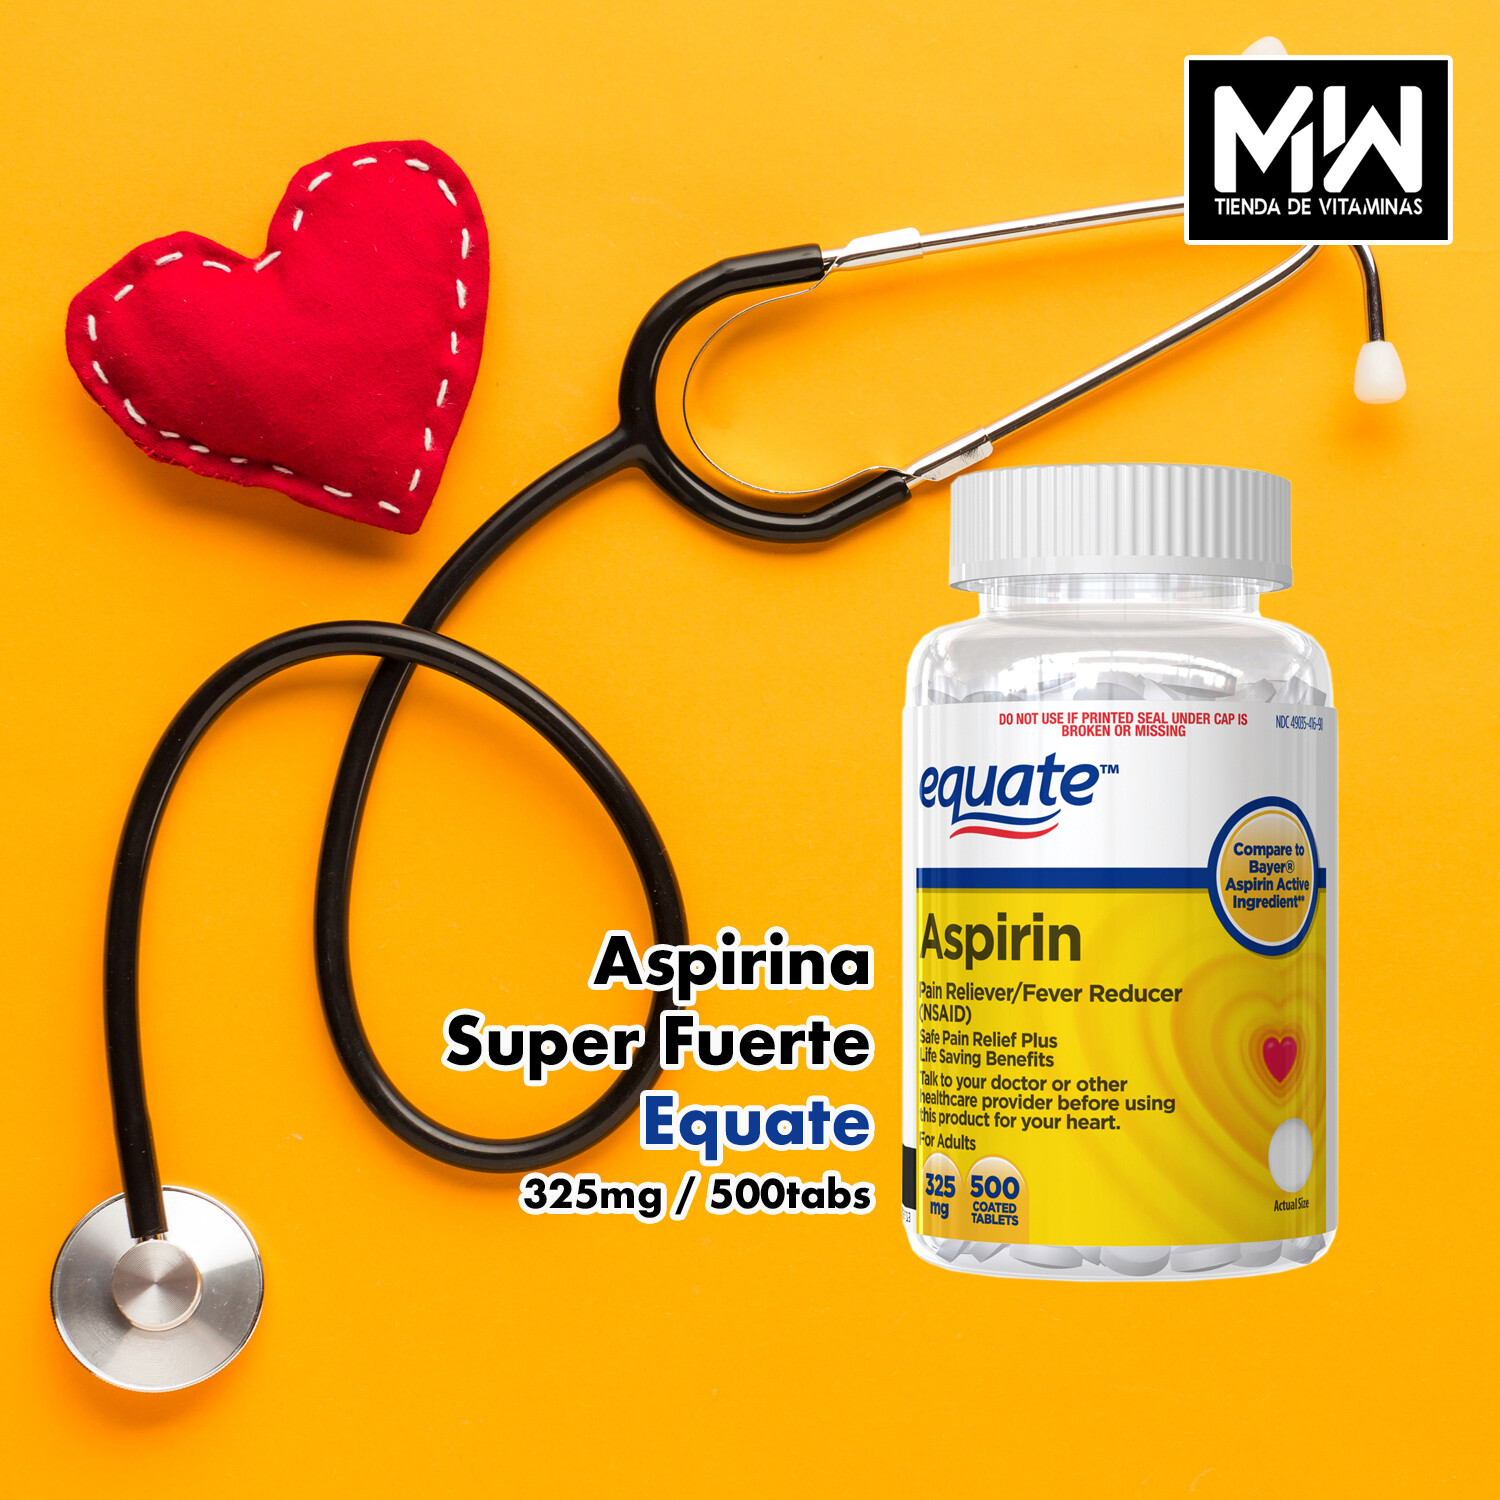 Aspirina Super Fuerte Equate / Aspirin Pain Reliever 325 mg 500 Tabs